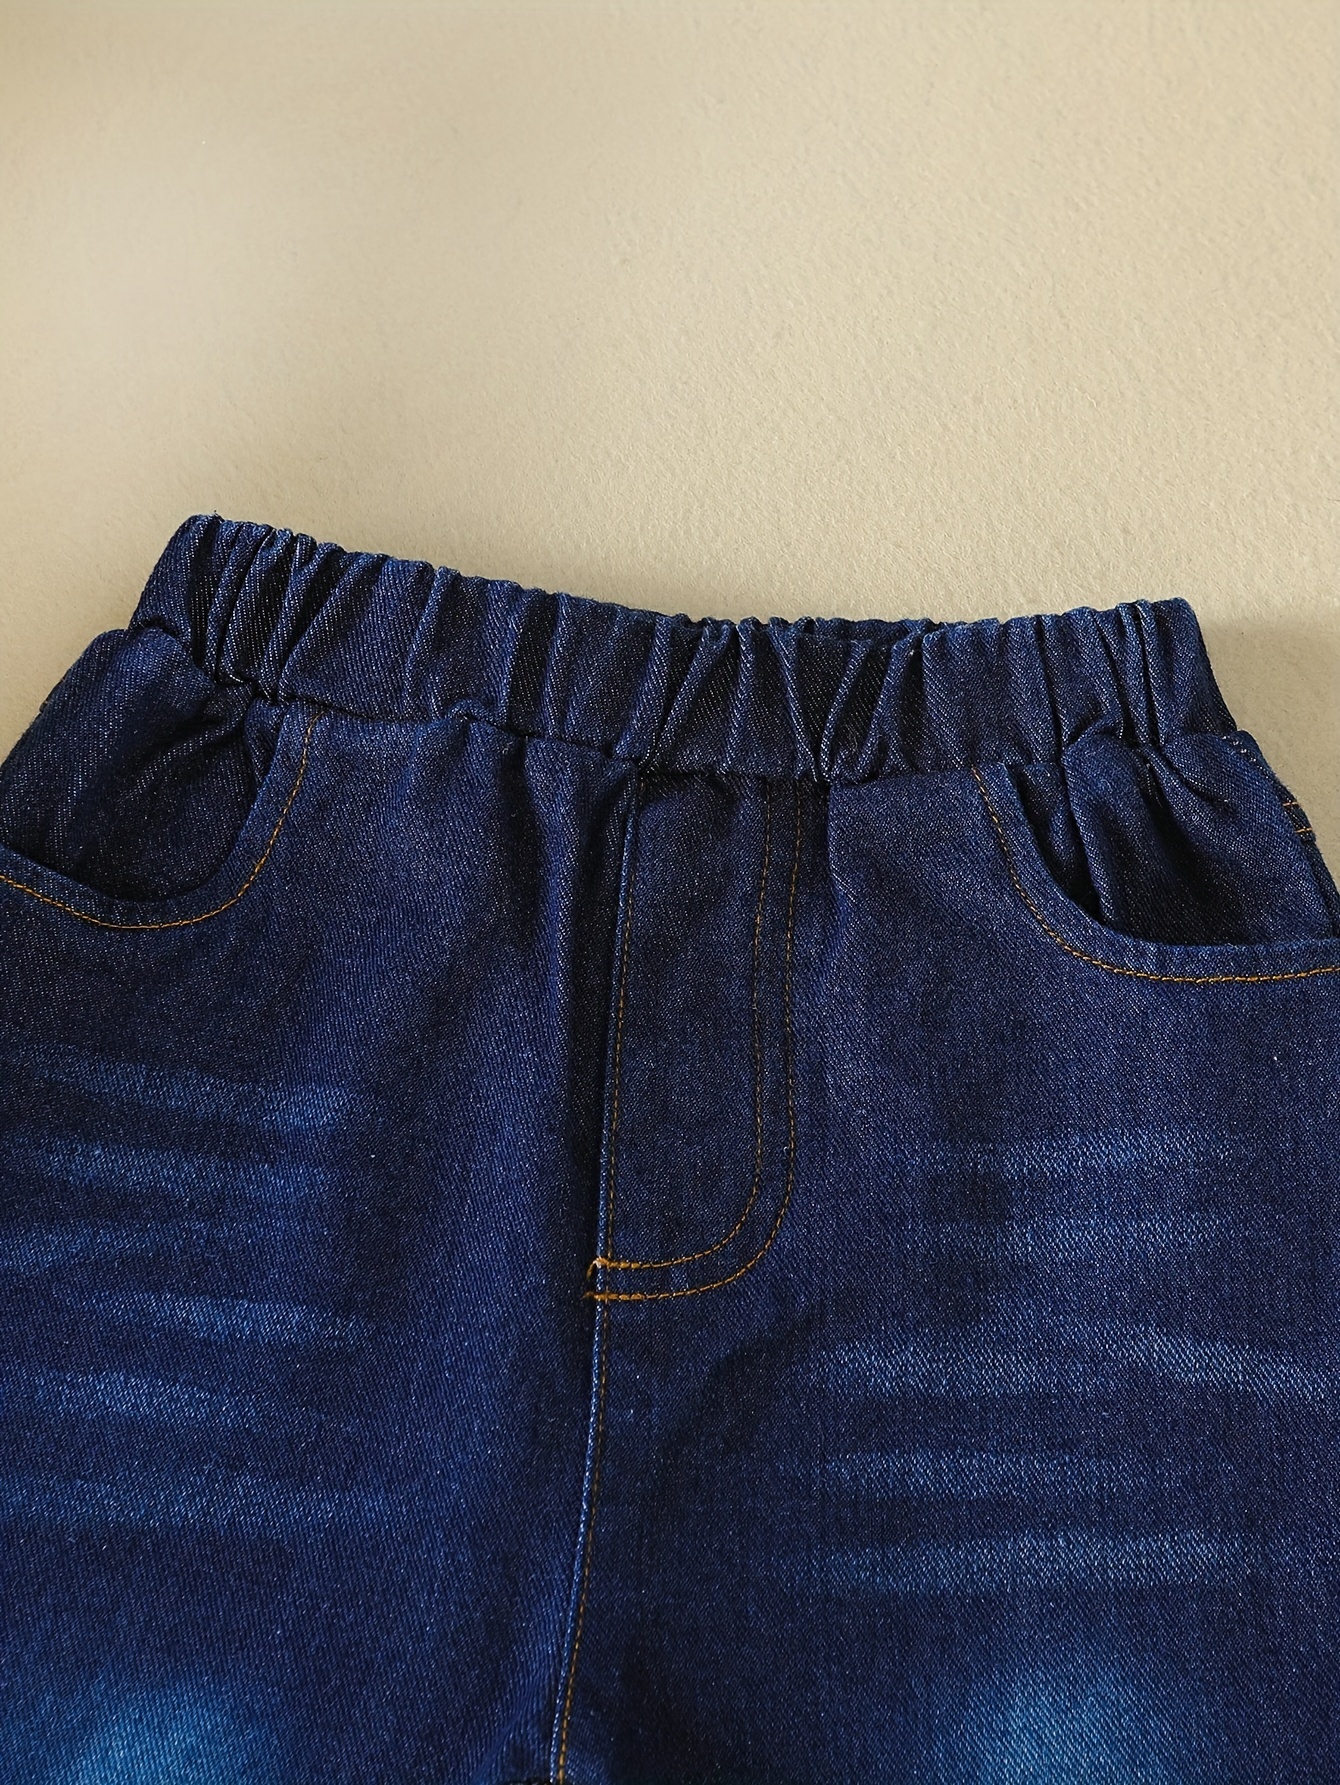 Stylish Denim Bell Bottom Girls Flare Jeans For Toddler Girls